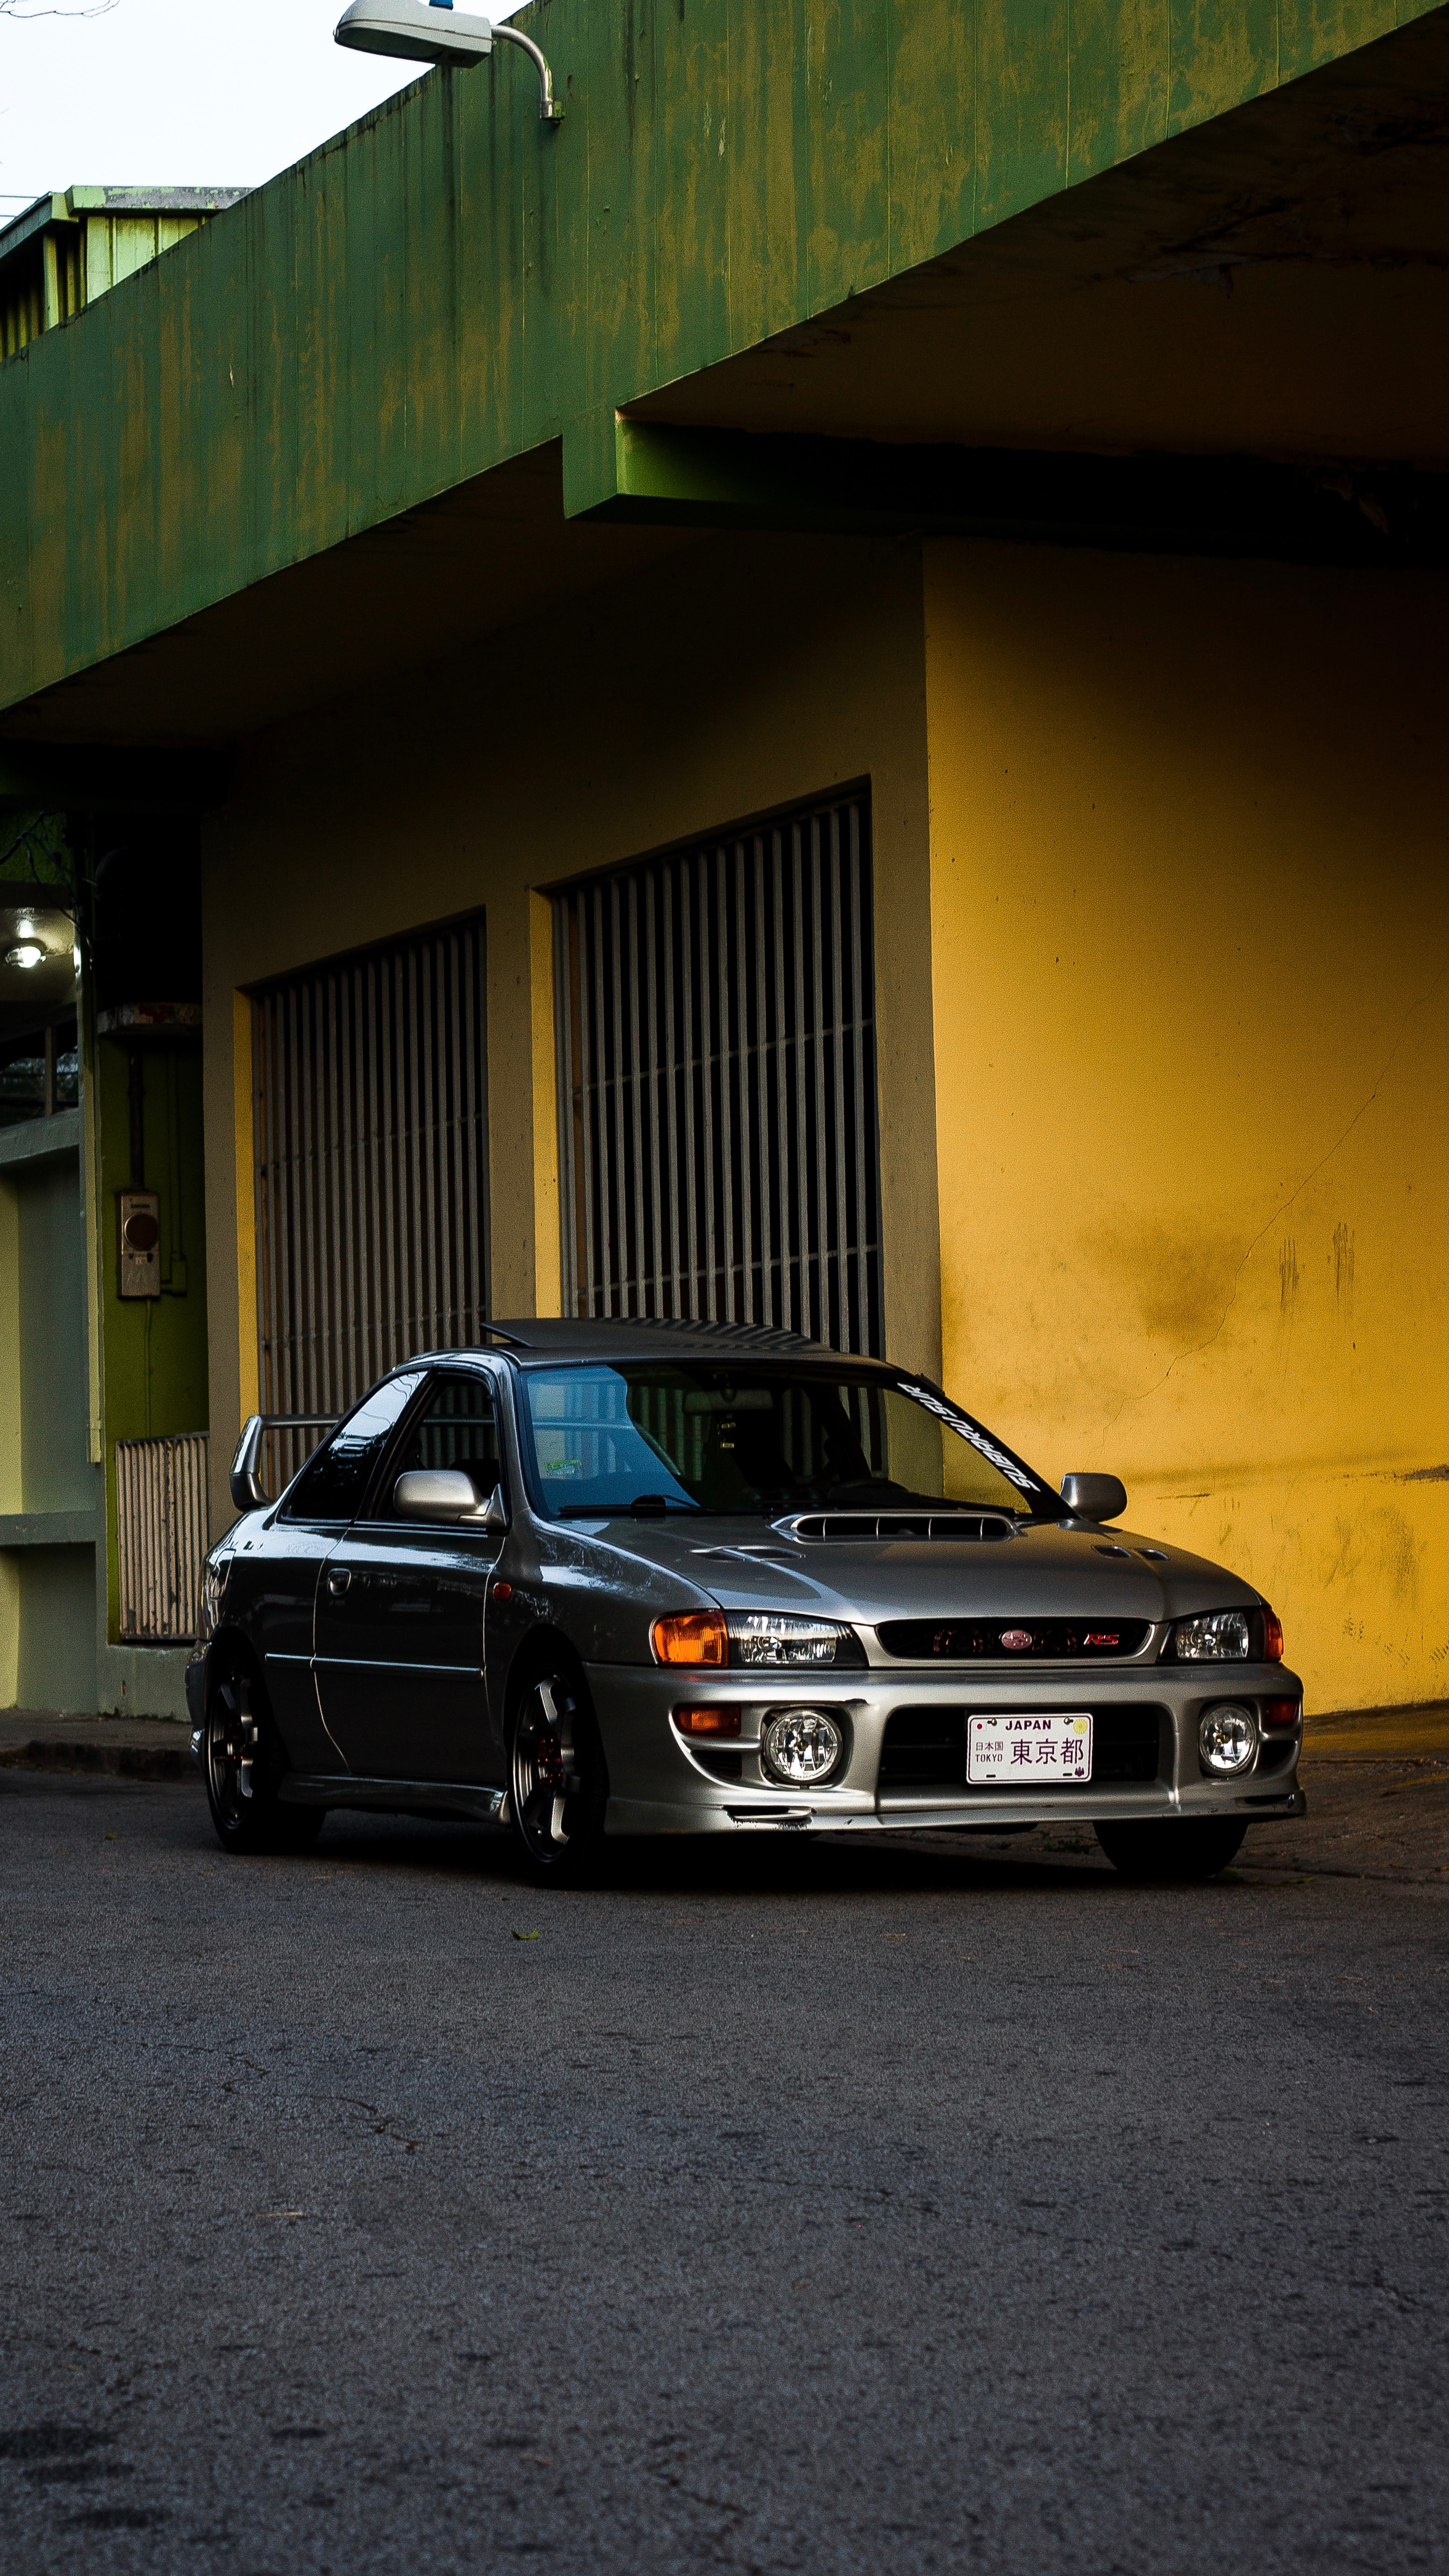 8k Subaru Images